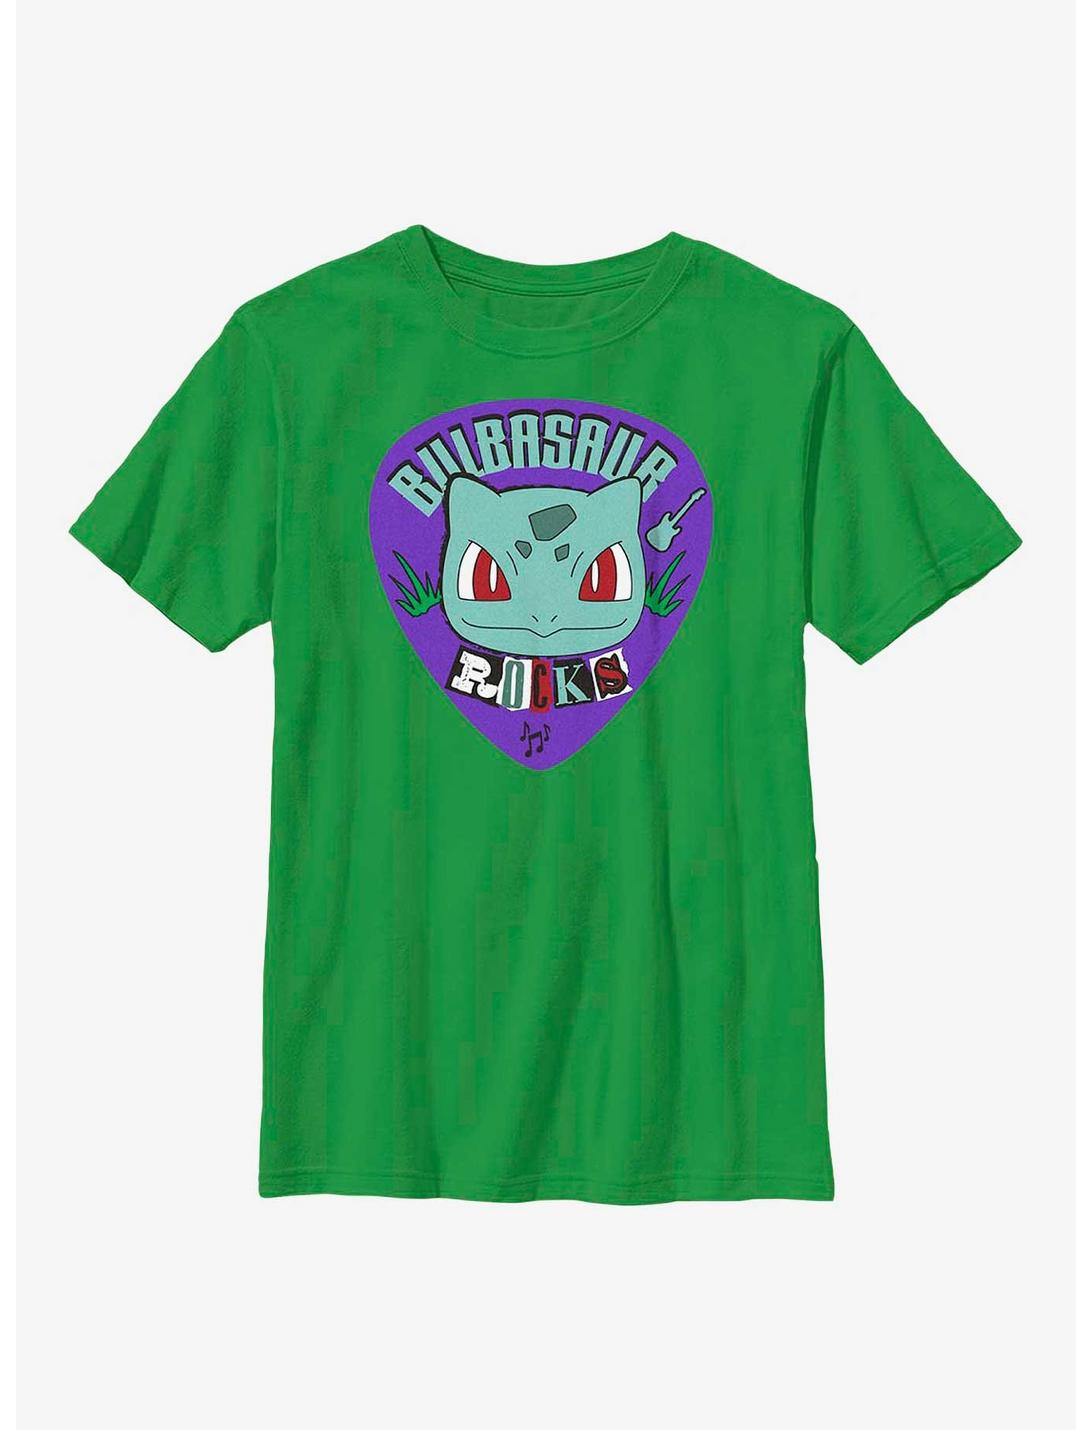 Pokemon Bulbasaur Rocks Youth T-Shirt, KELLY, hi-res